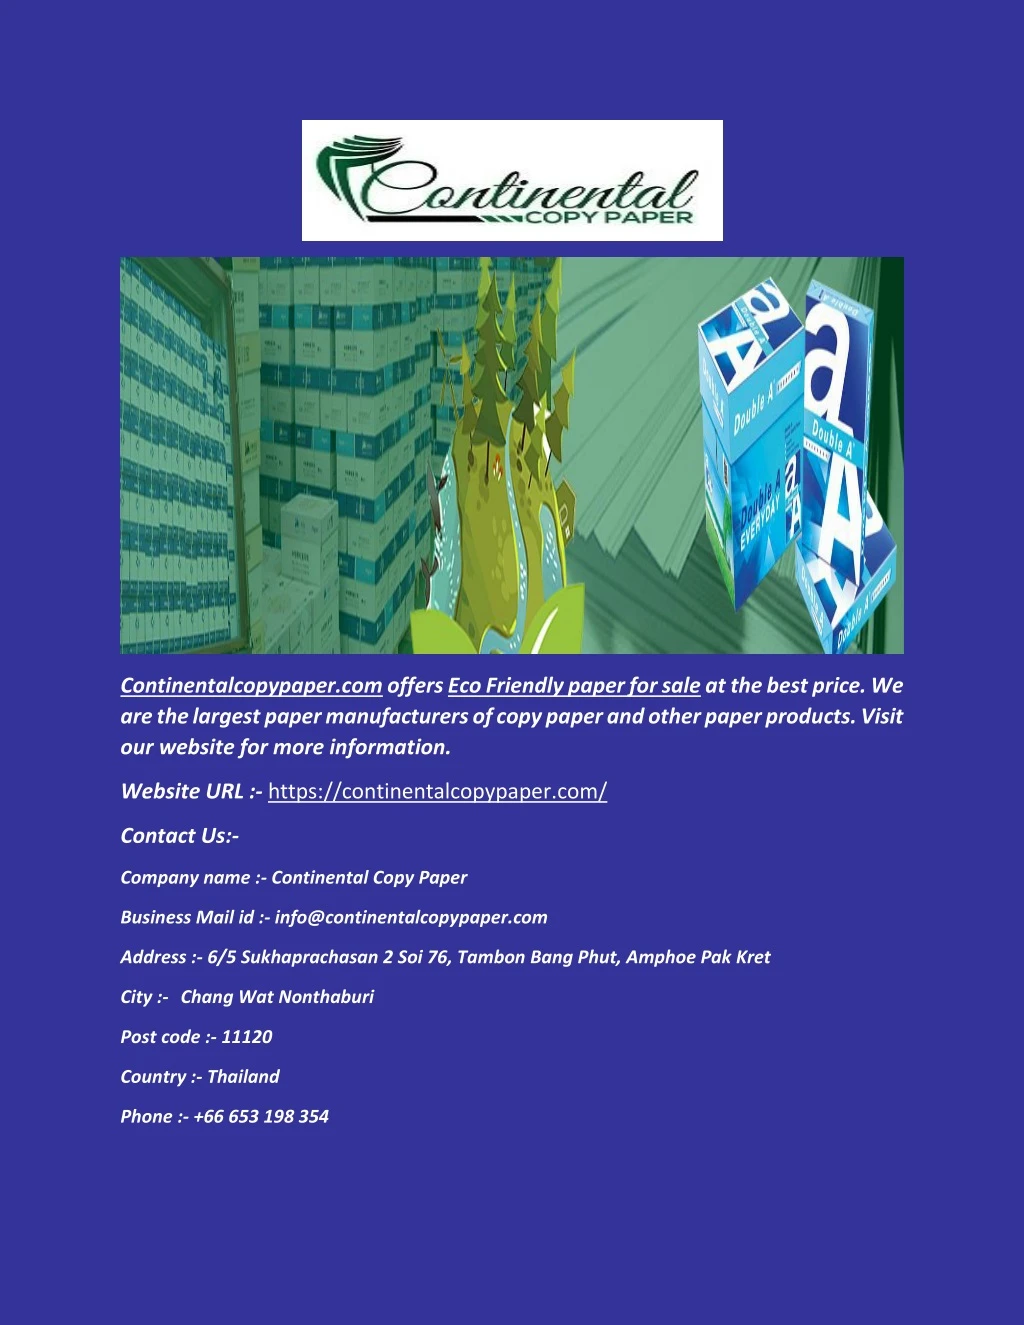 continentalcopypaper com offers eco friendly